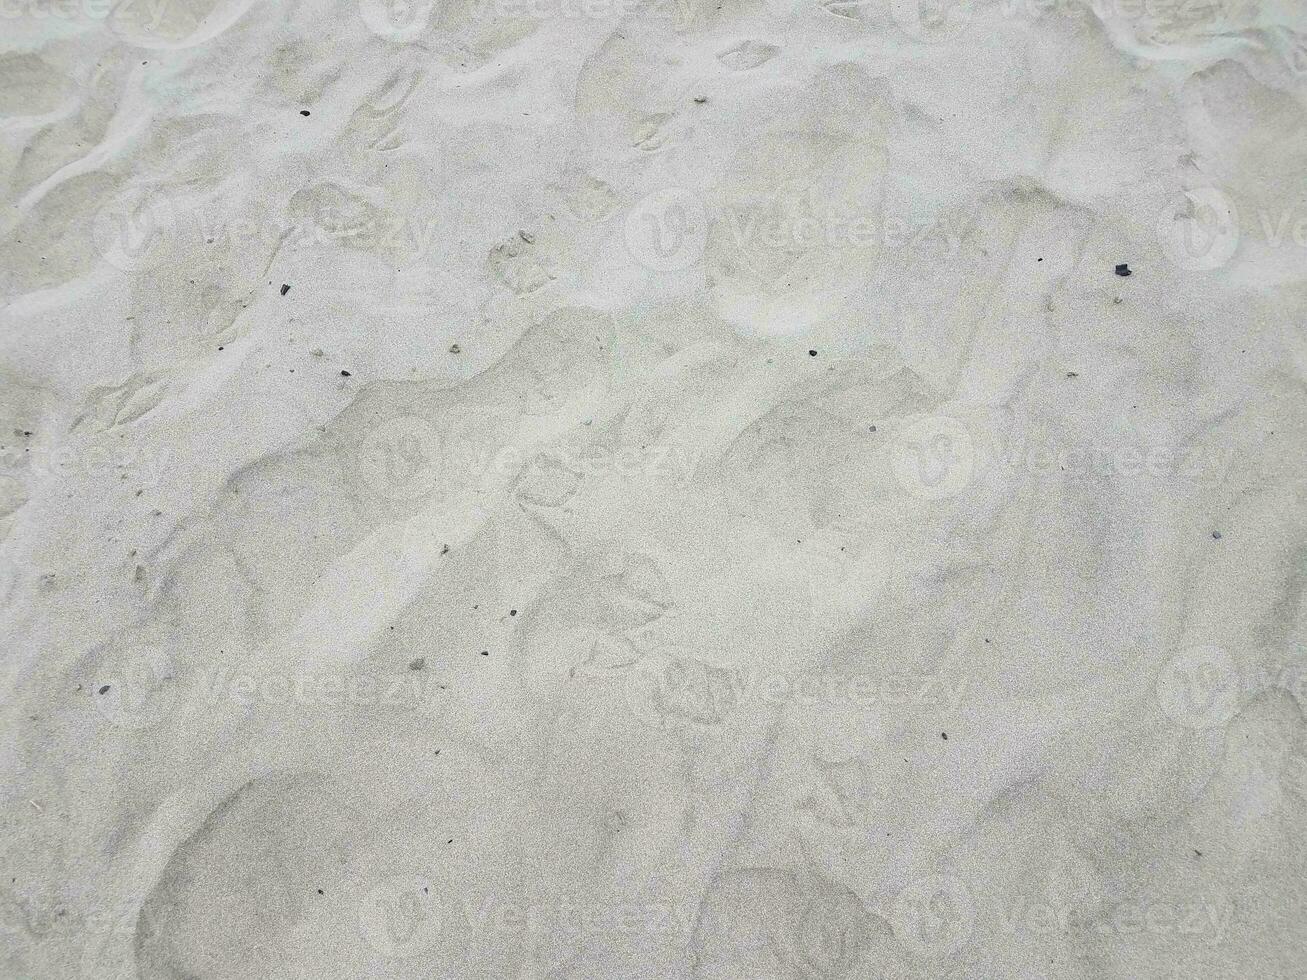 Vogelabdrücke oder -spuren auf trockenem Sand foto